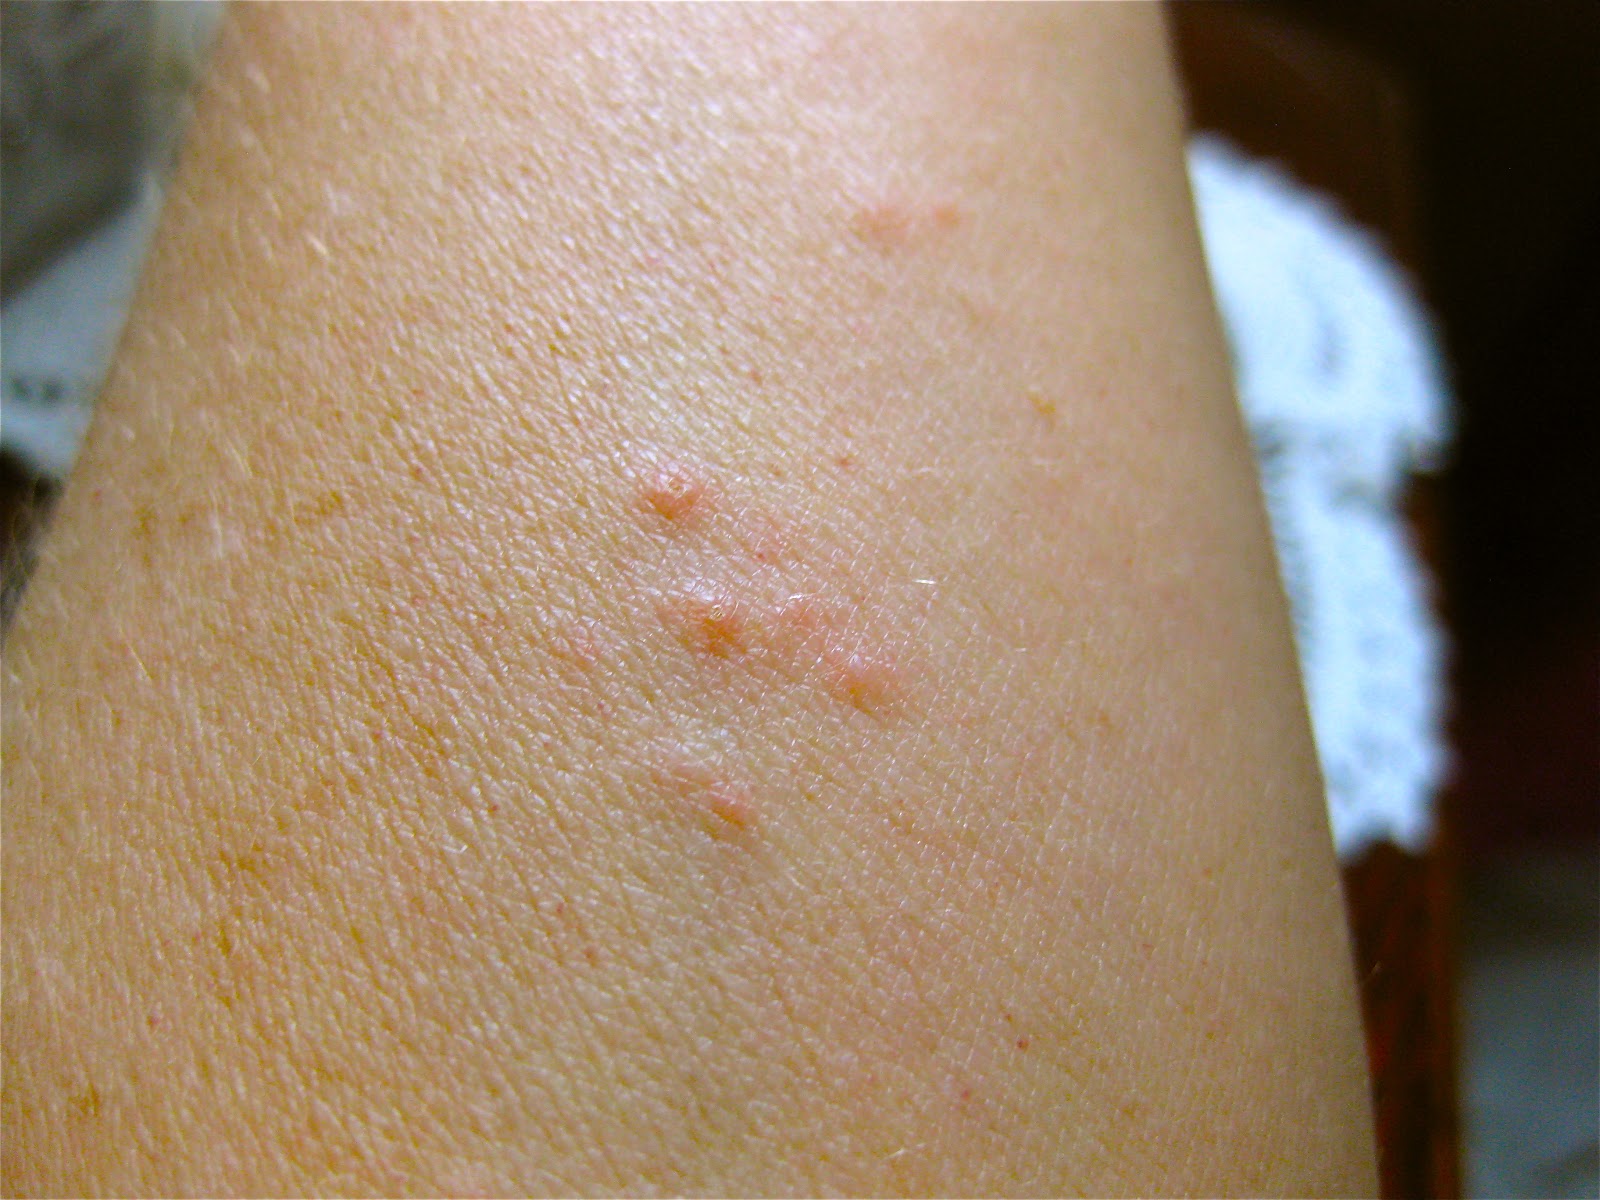 Kilohana K9s Official Blog What Do Bed Bug Bites Look Like